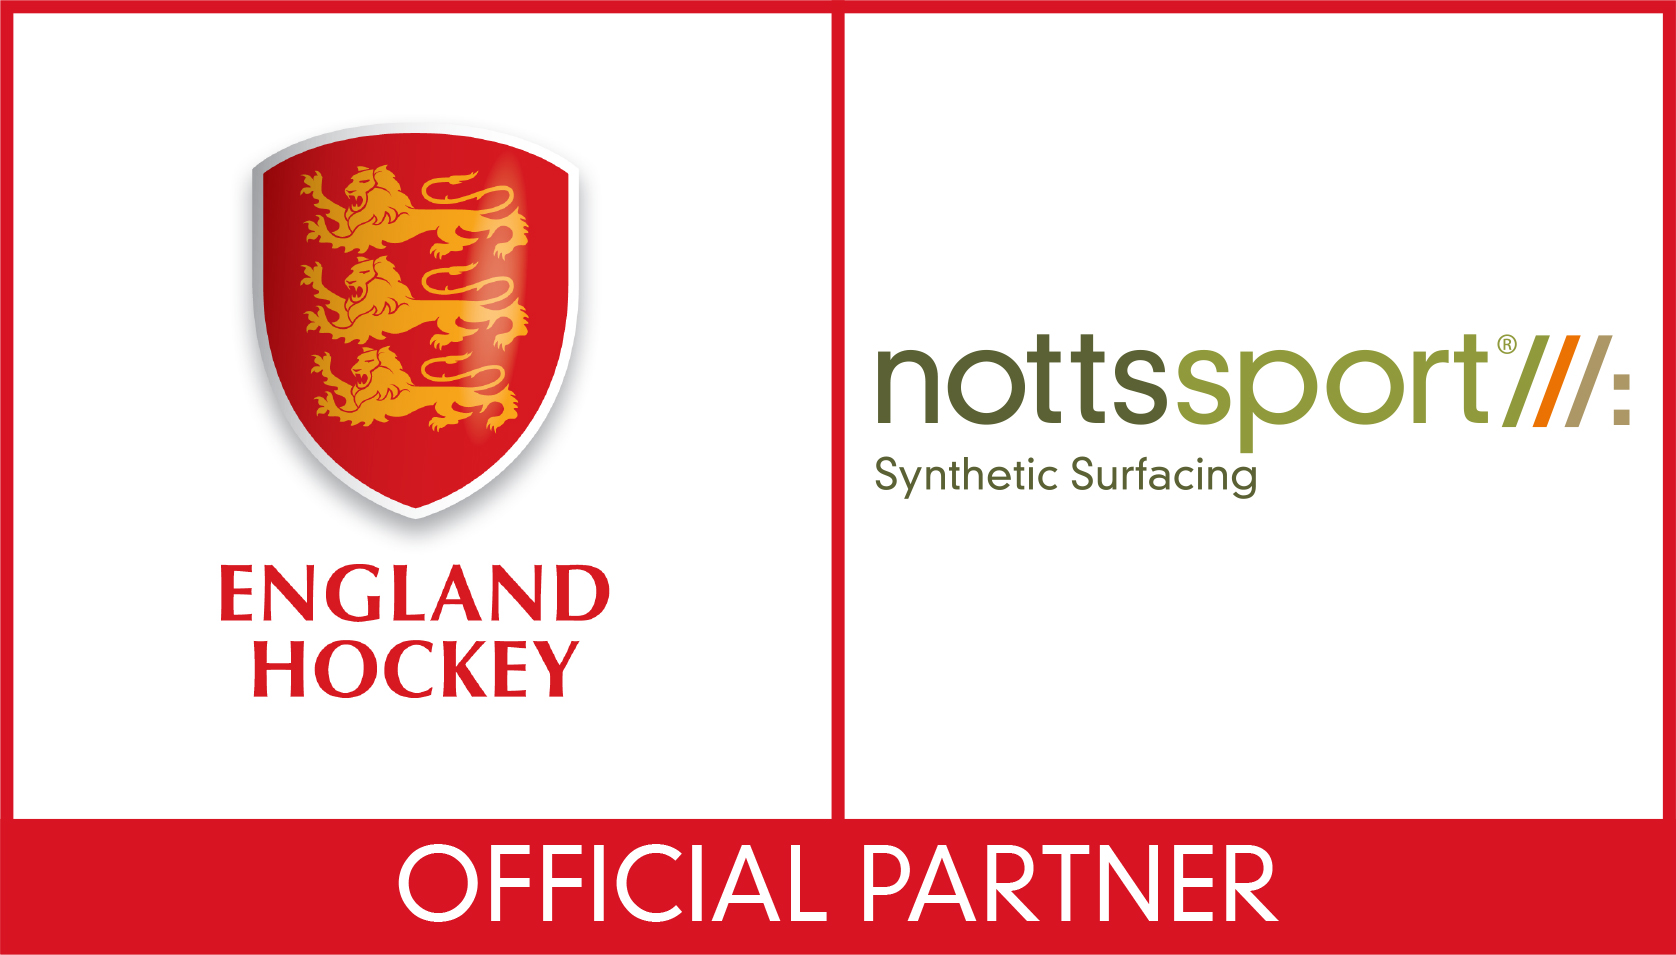 Notts Sport Official Partner of England Hockey